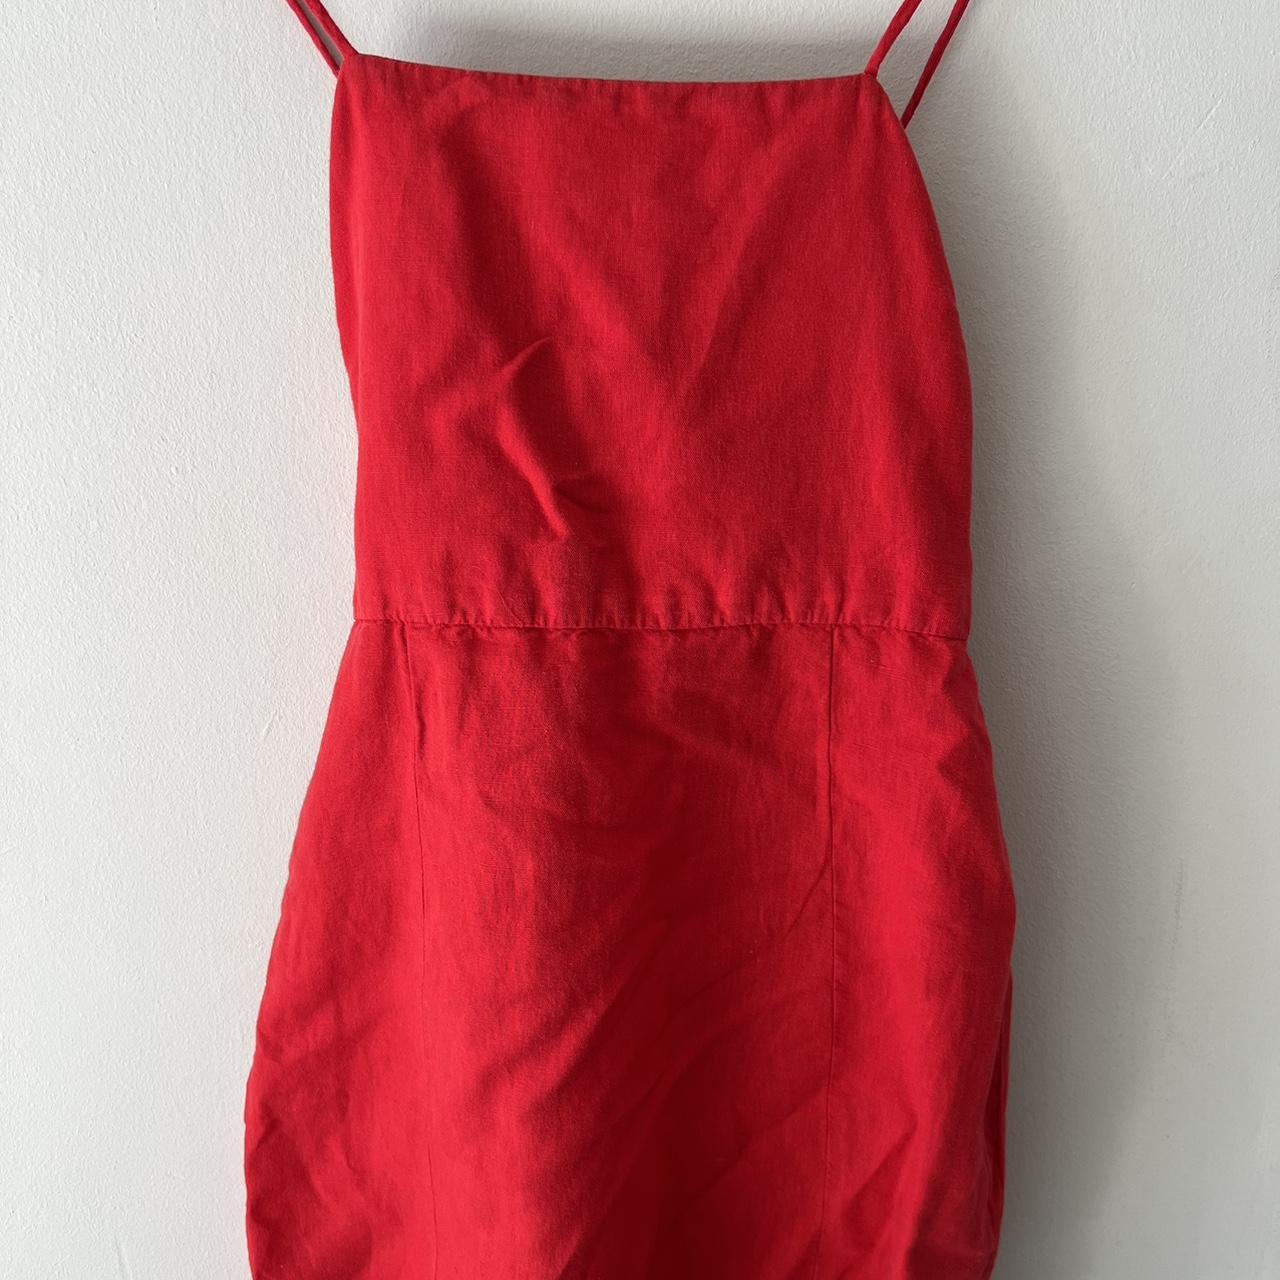 Red Zara linen blend mini dress Cross detailing at... - Depop